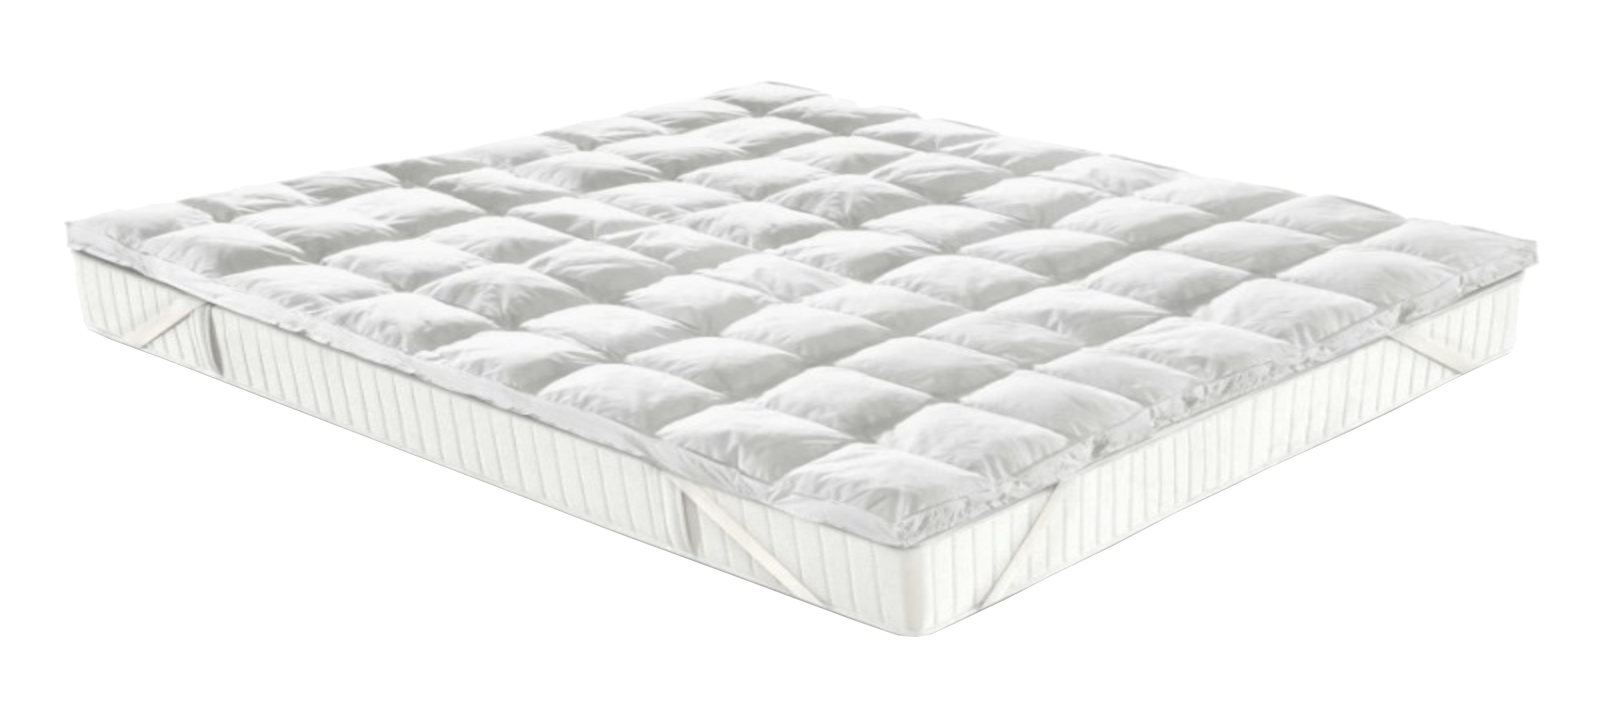 Un materasso bianco con sopra un coprimaterasso bianco.